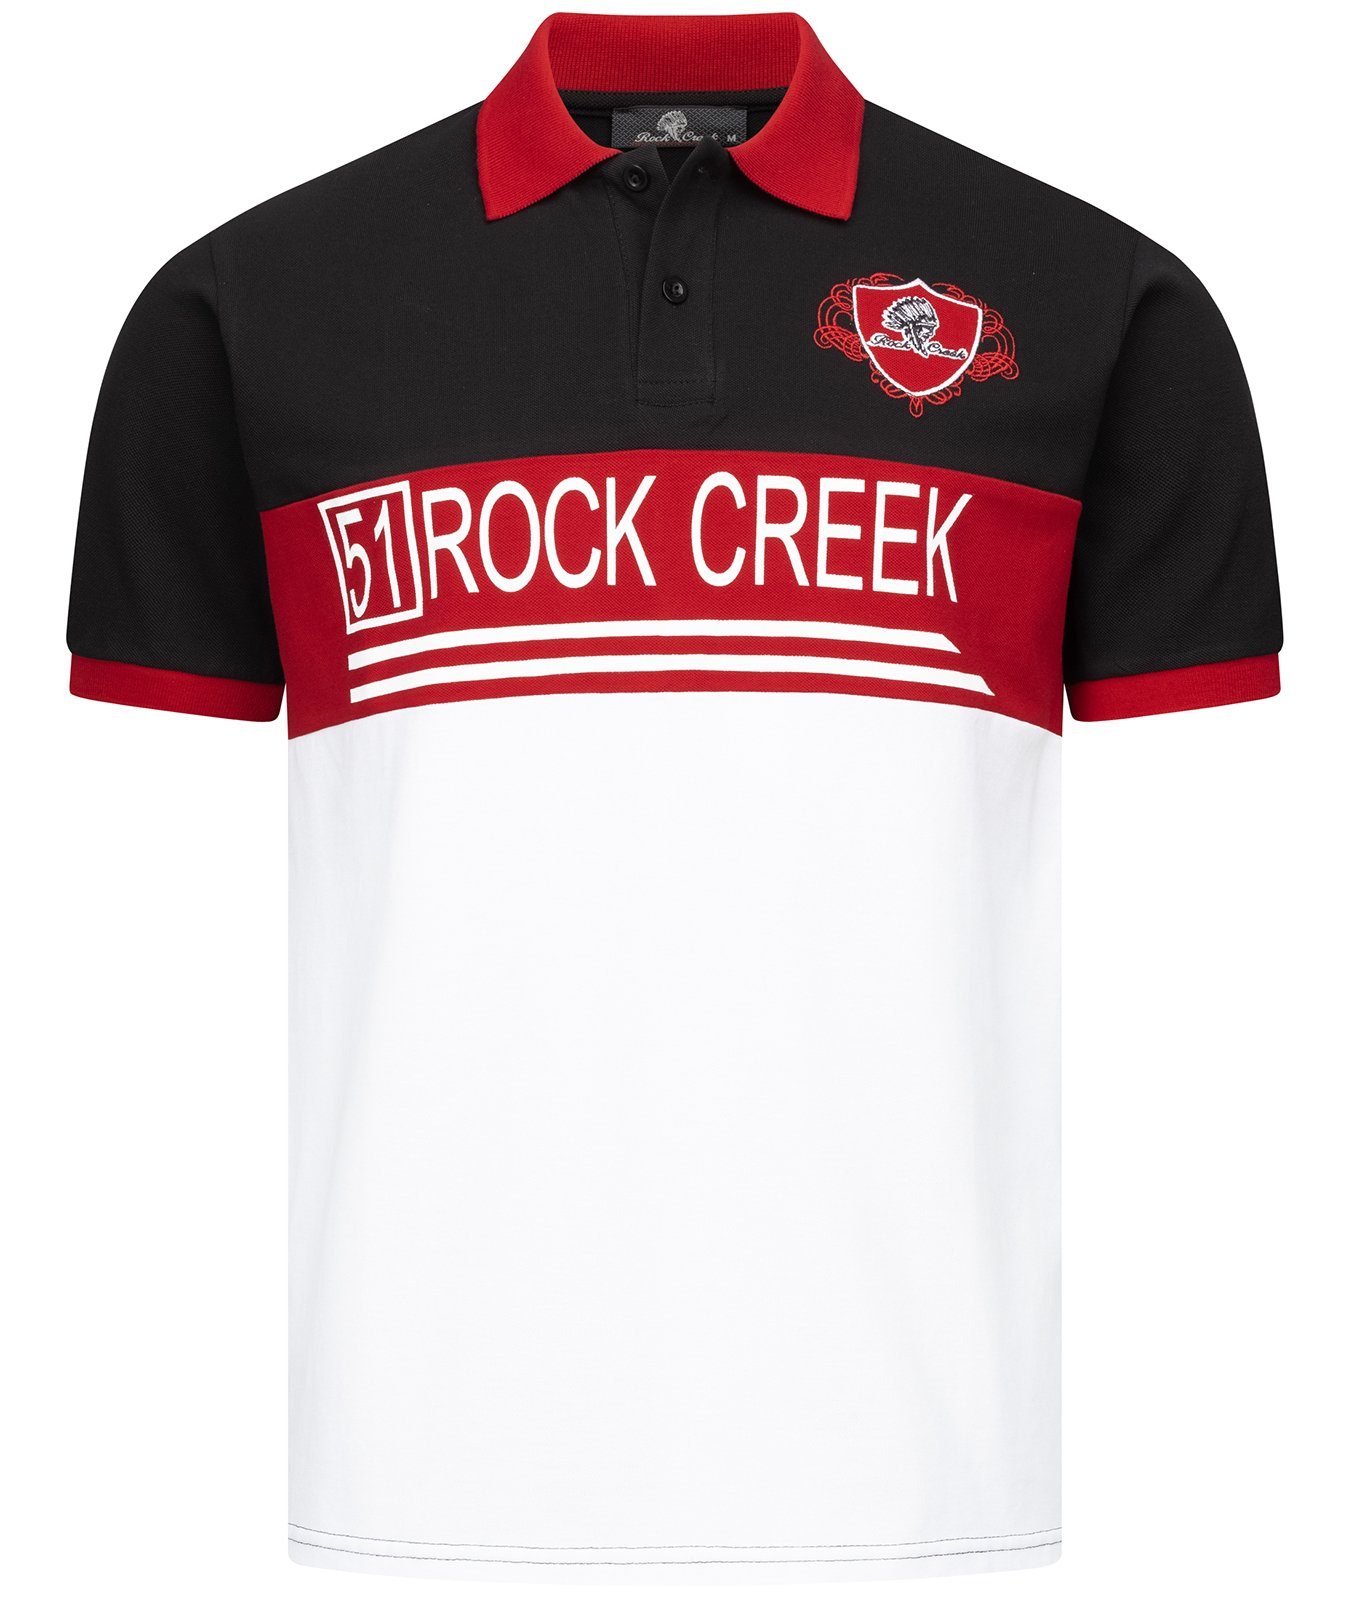 Rock Creek Poloshirt Herren T-Shirt mit Polokragen H-306